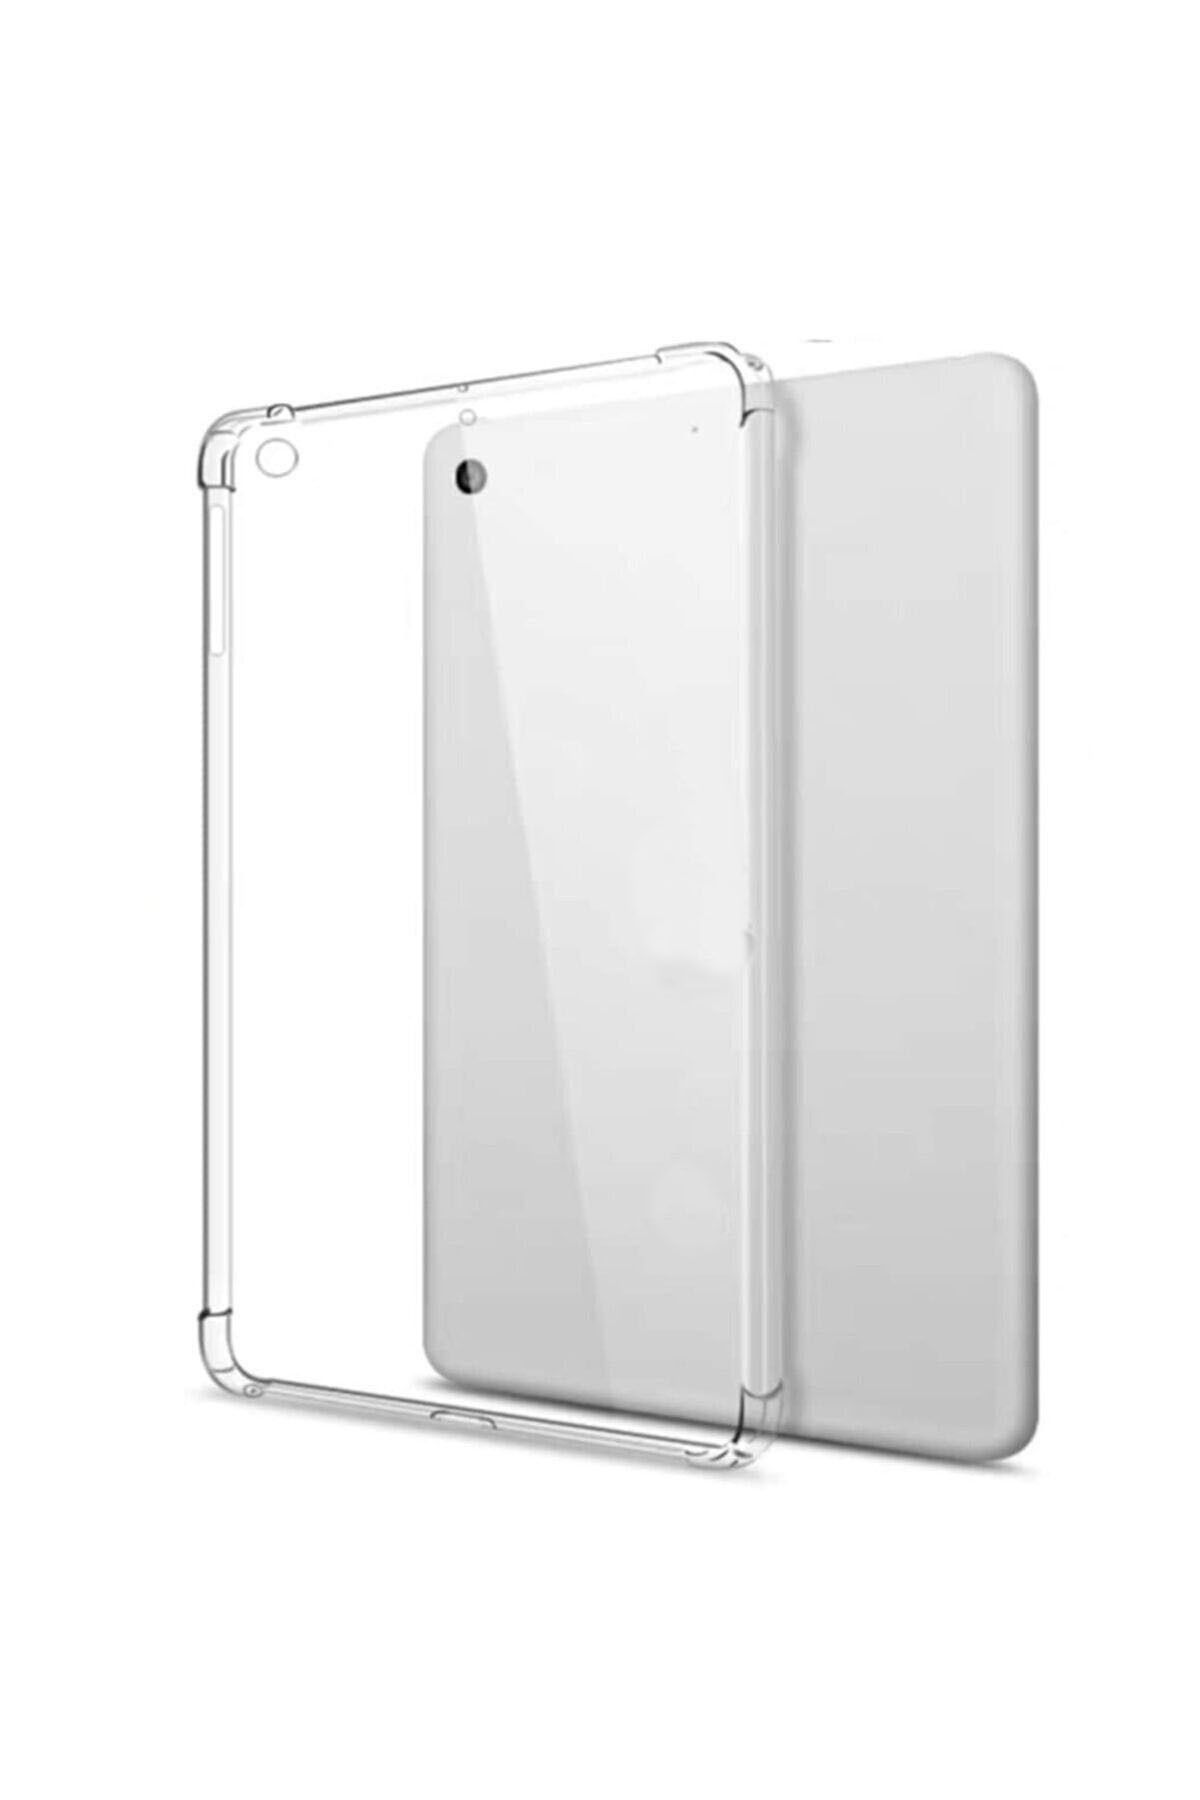 Nezih Case Apple Ipad Mini 2/3/4/5 Köşe Korumalı Darbelere Dayanıklı Renksiz Şeffaf Sert Silikon Kılıf Kapak